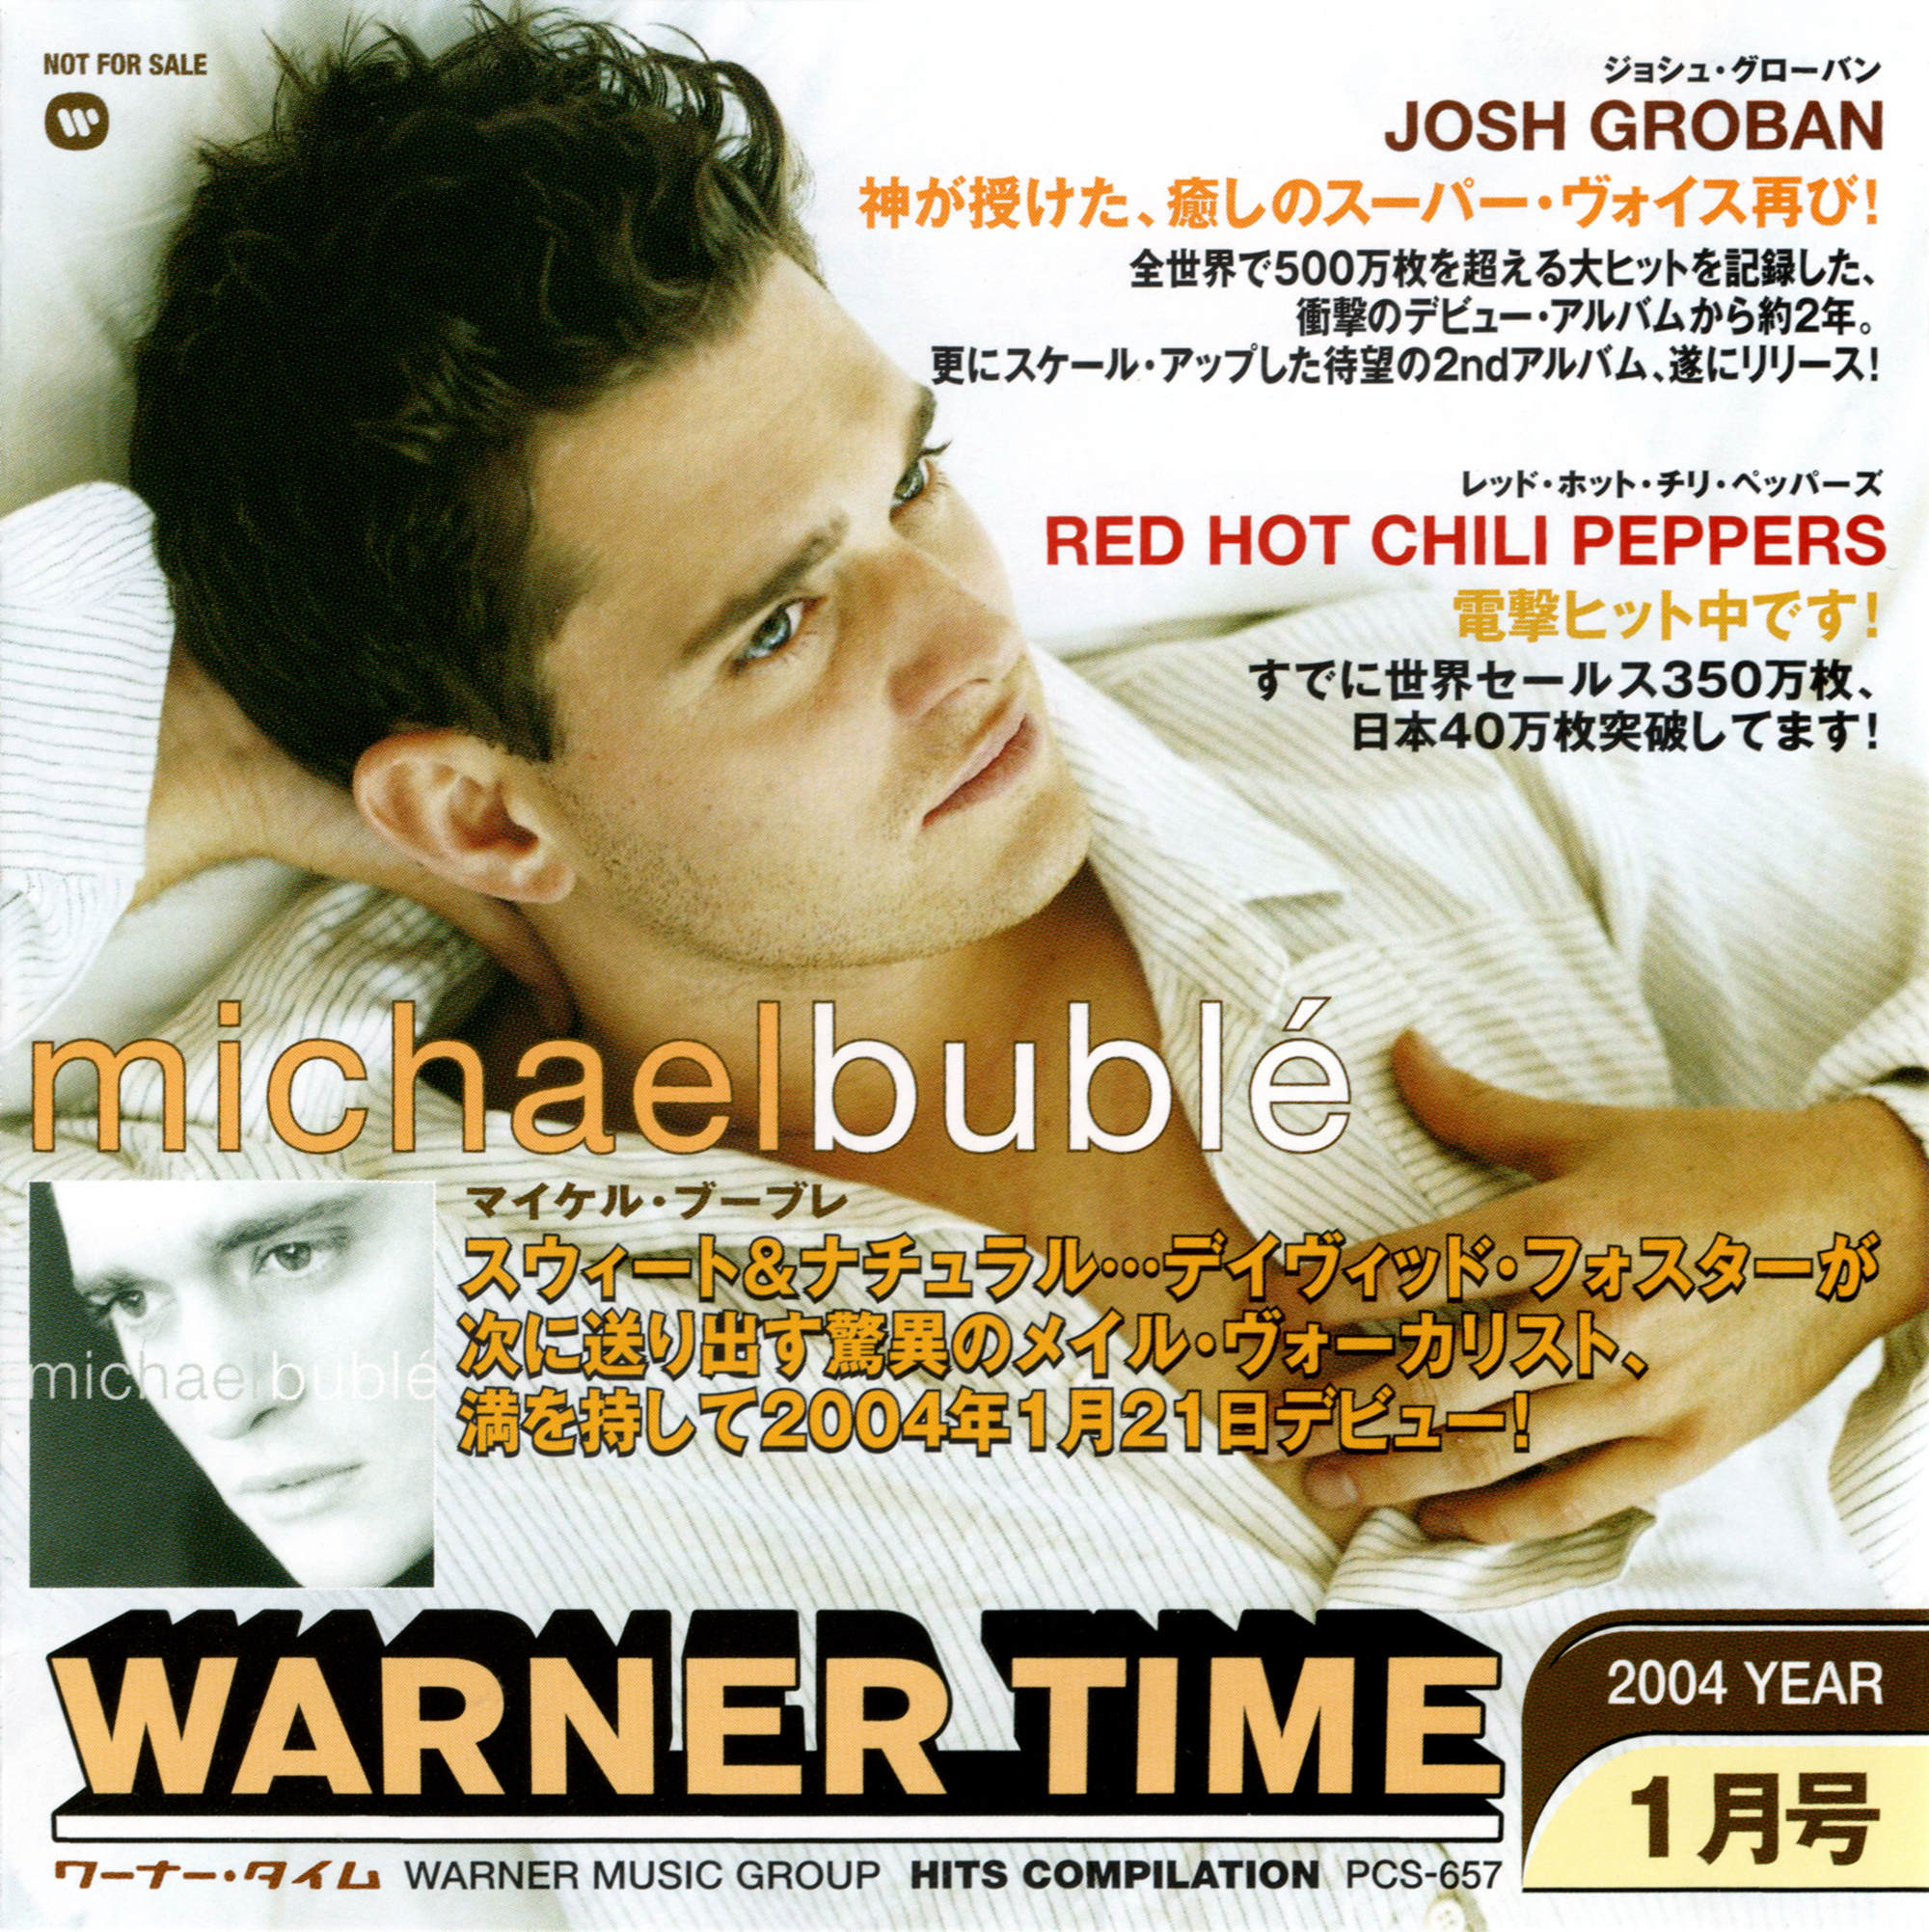 非売品プロモ盤CD『WARNER TIME ワーナー・タイム2004. 1月号』高画質CDジャケット画像 (ジャケ写)